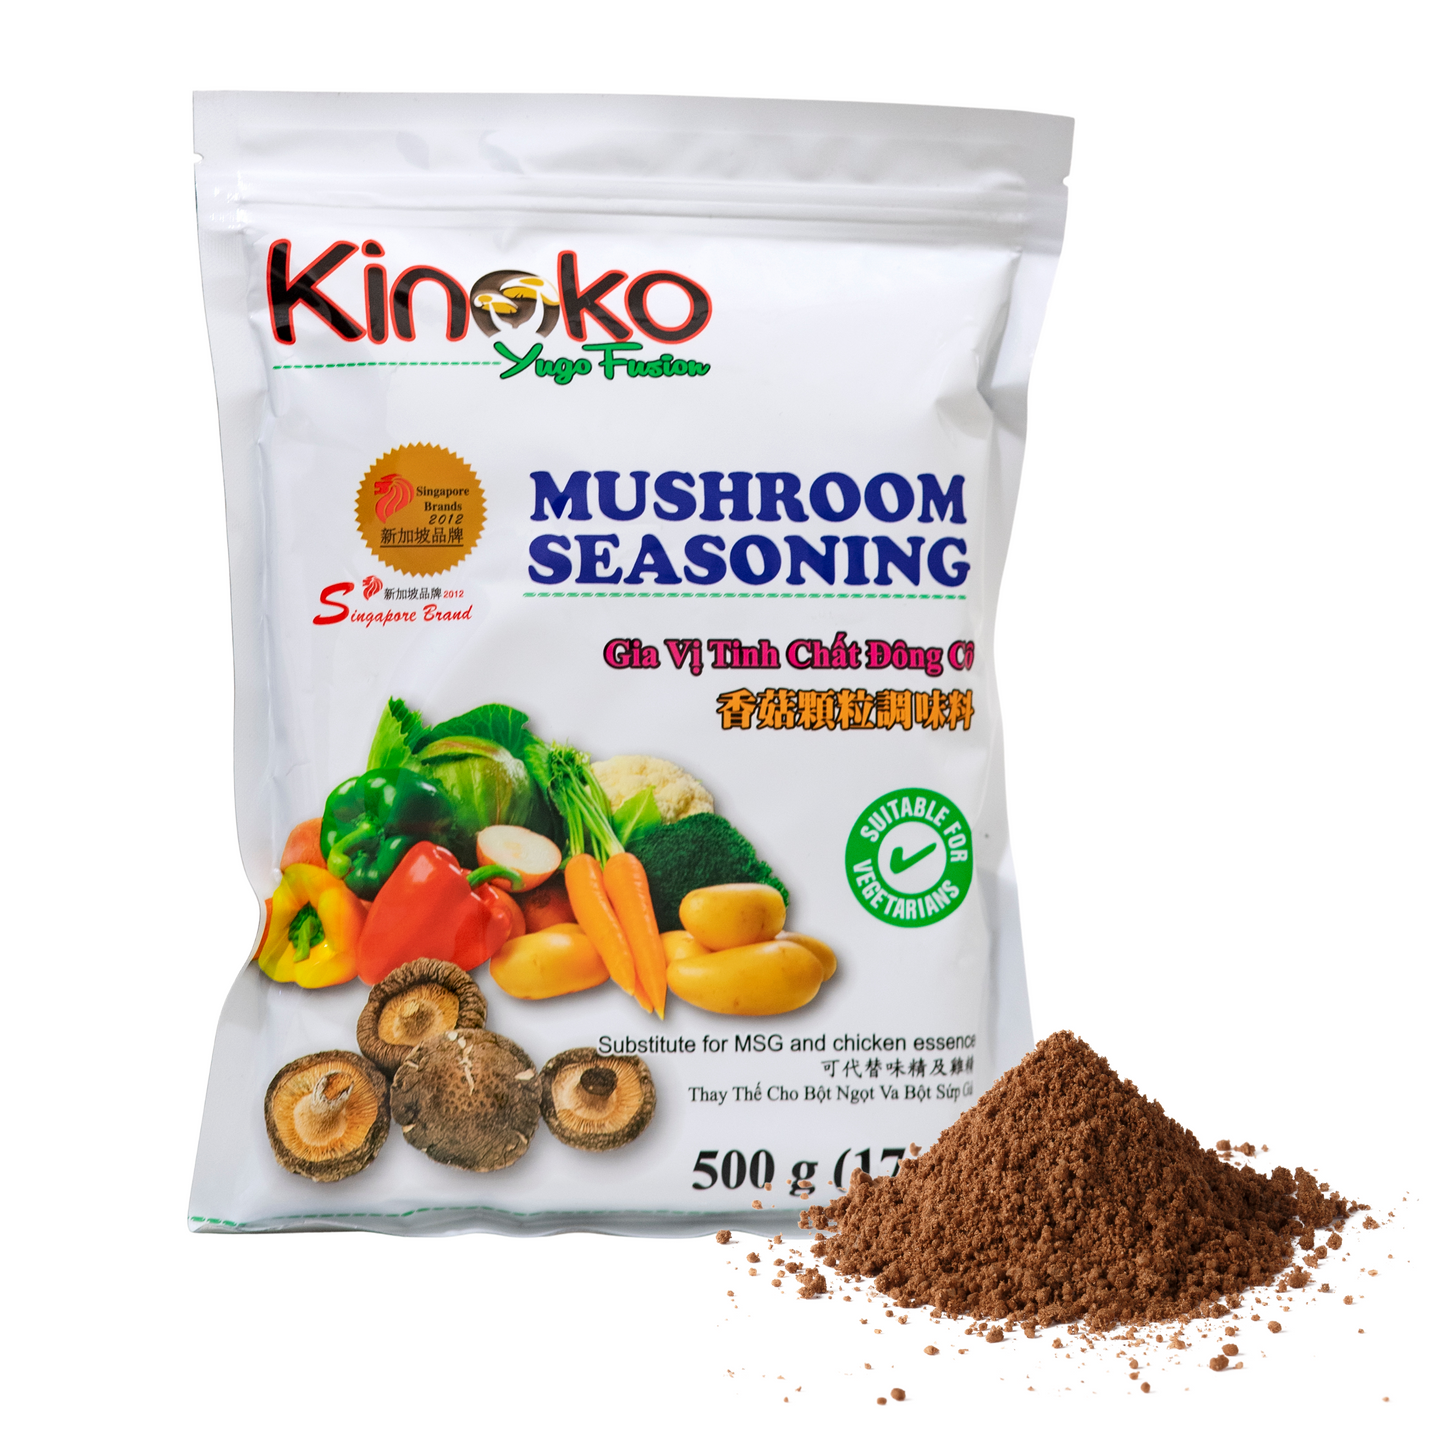 Kinoko Yugo Fusion Mushroom Seasoning